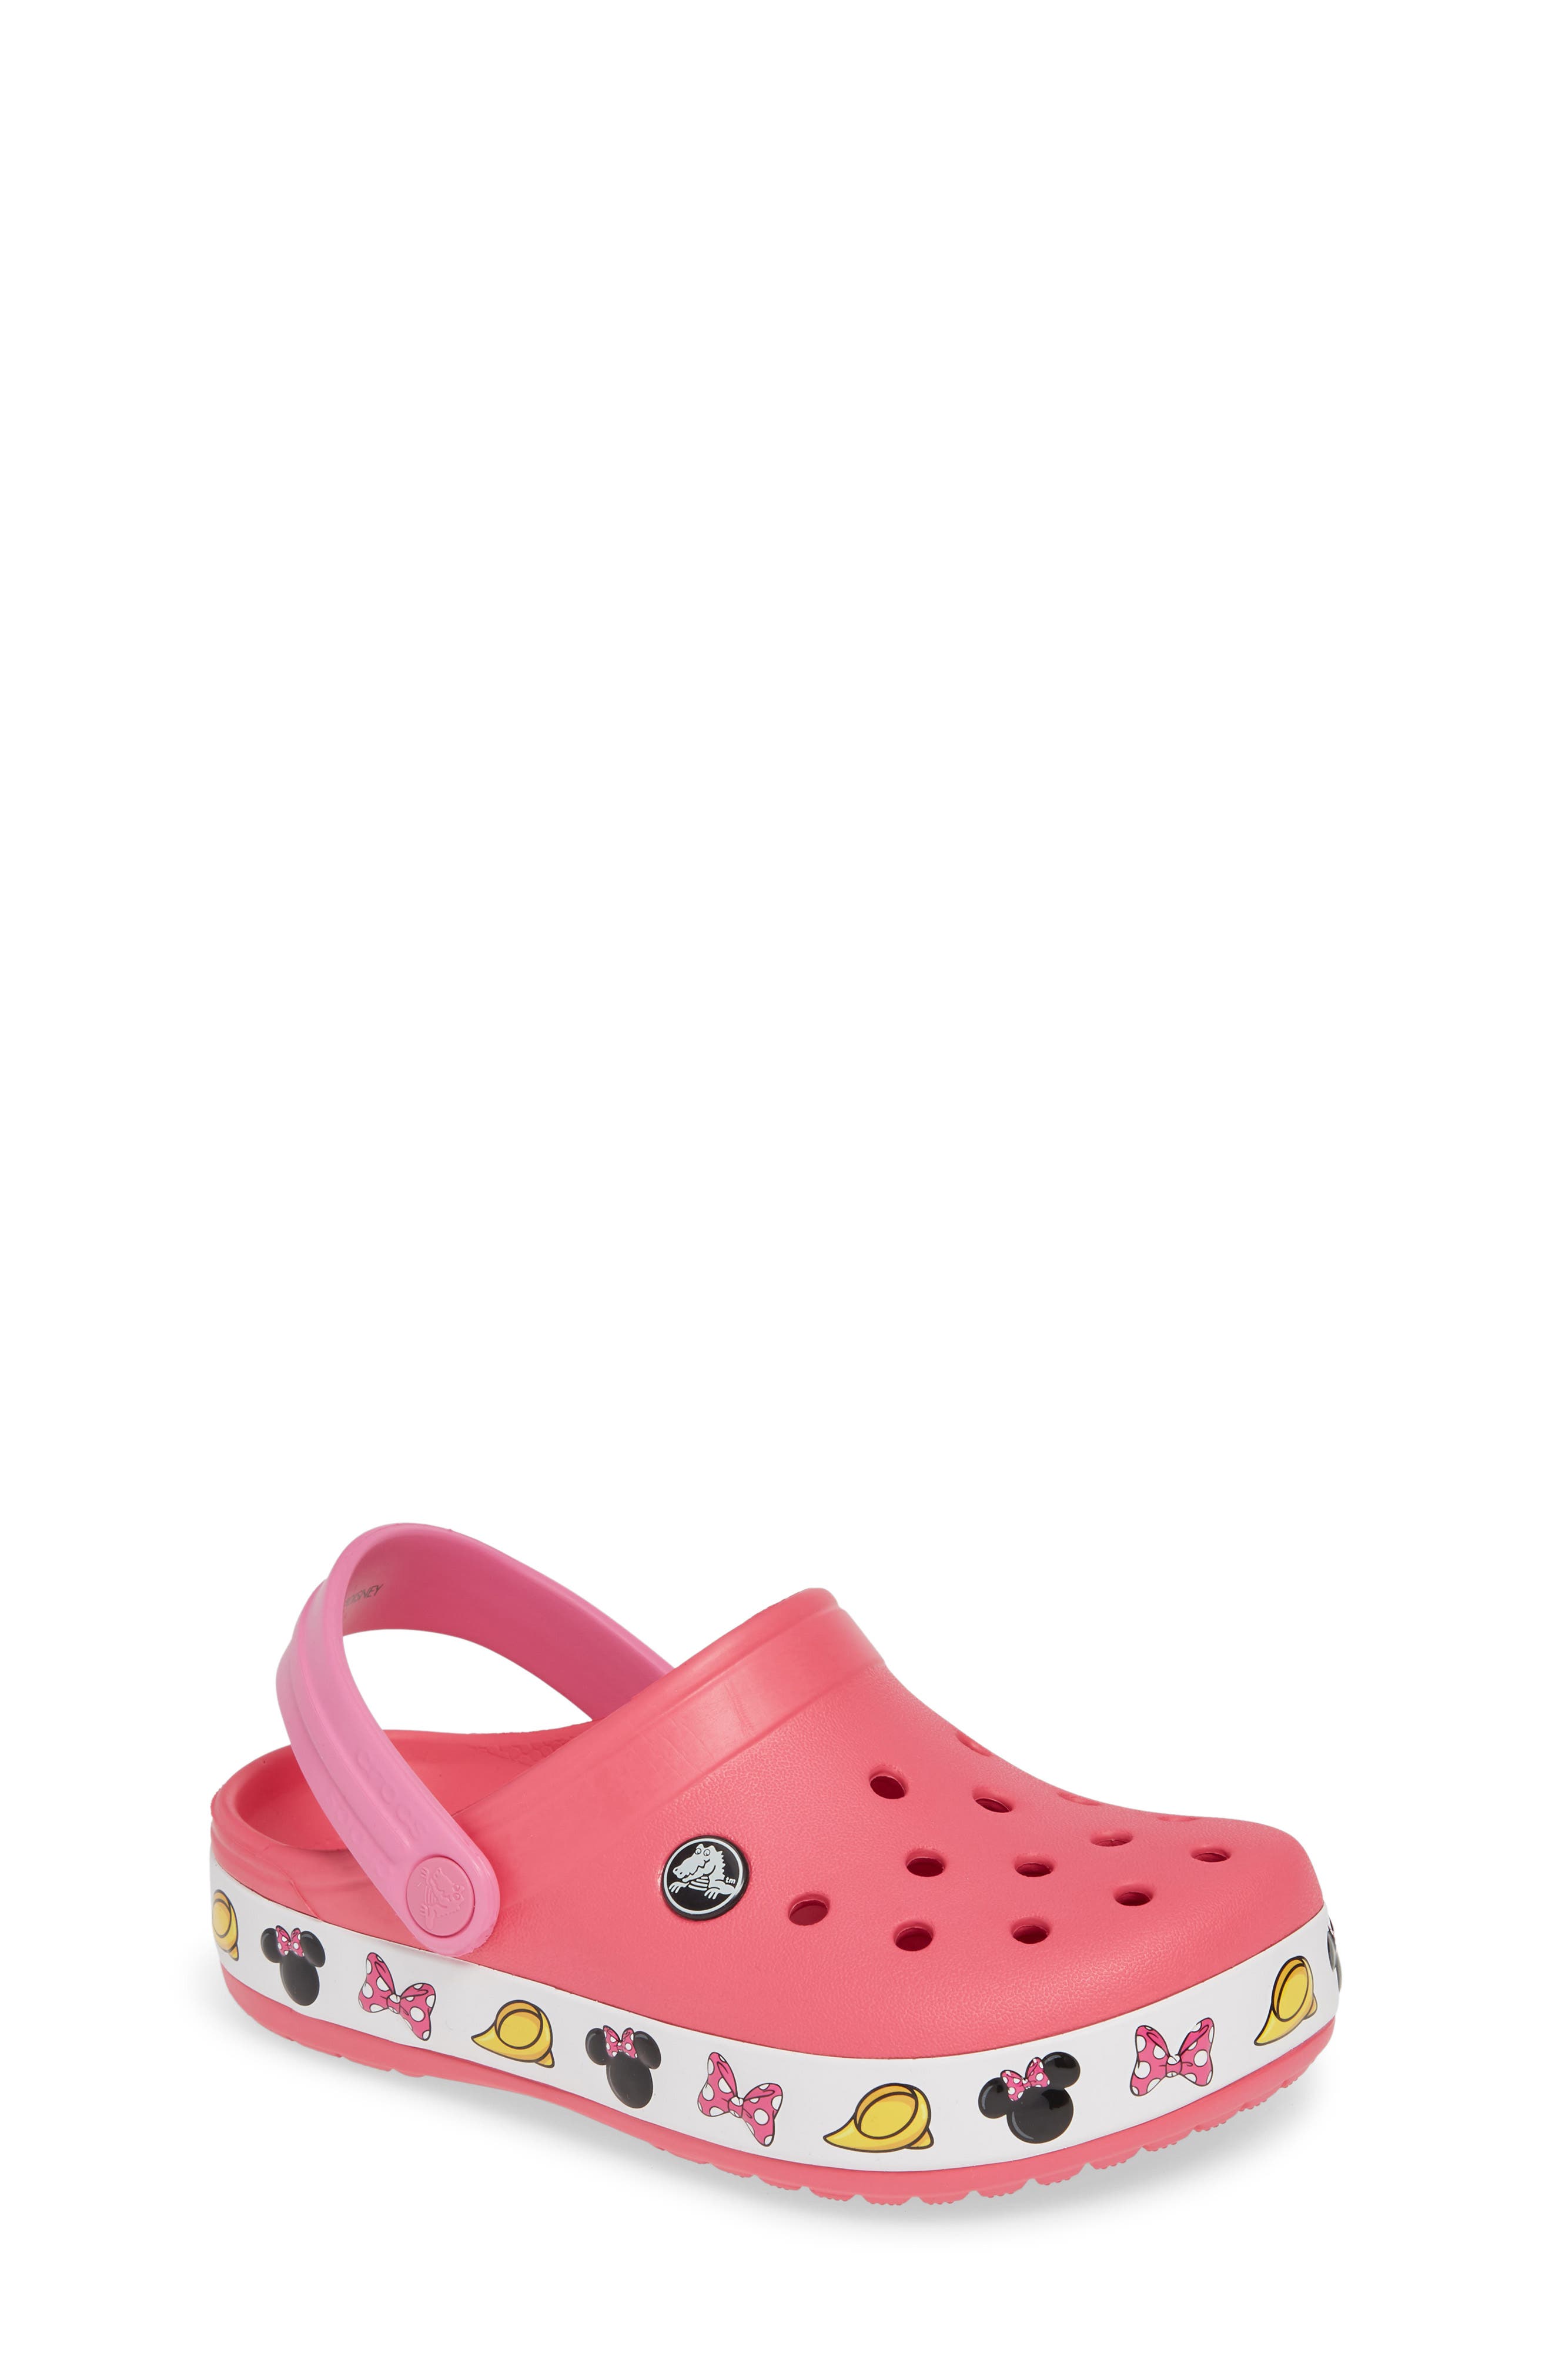 crocs minnie mouse shoes